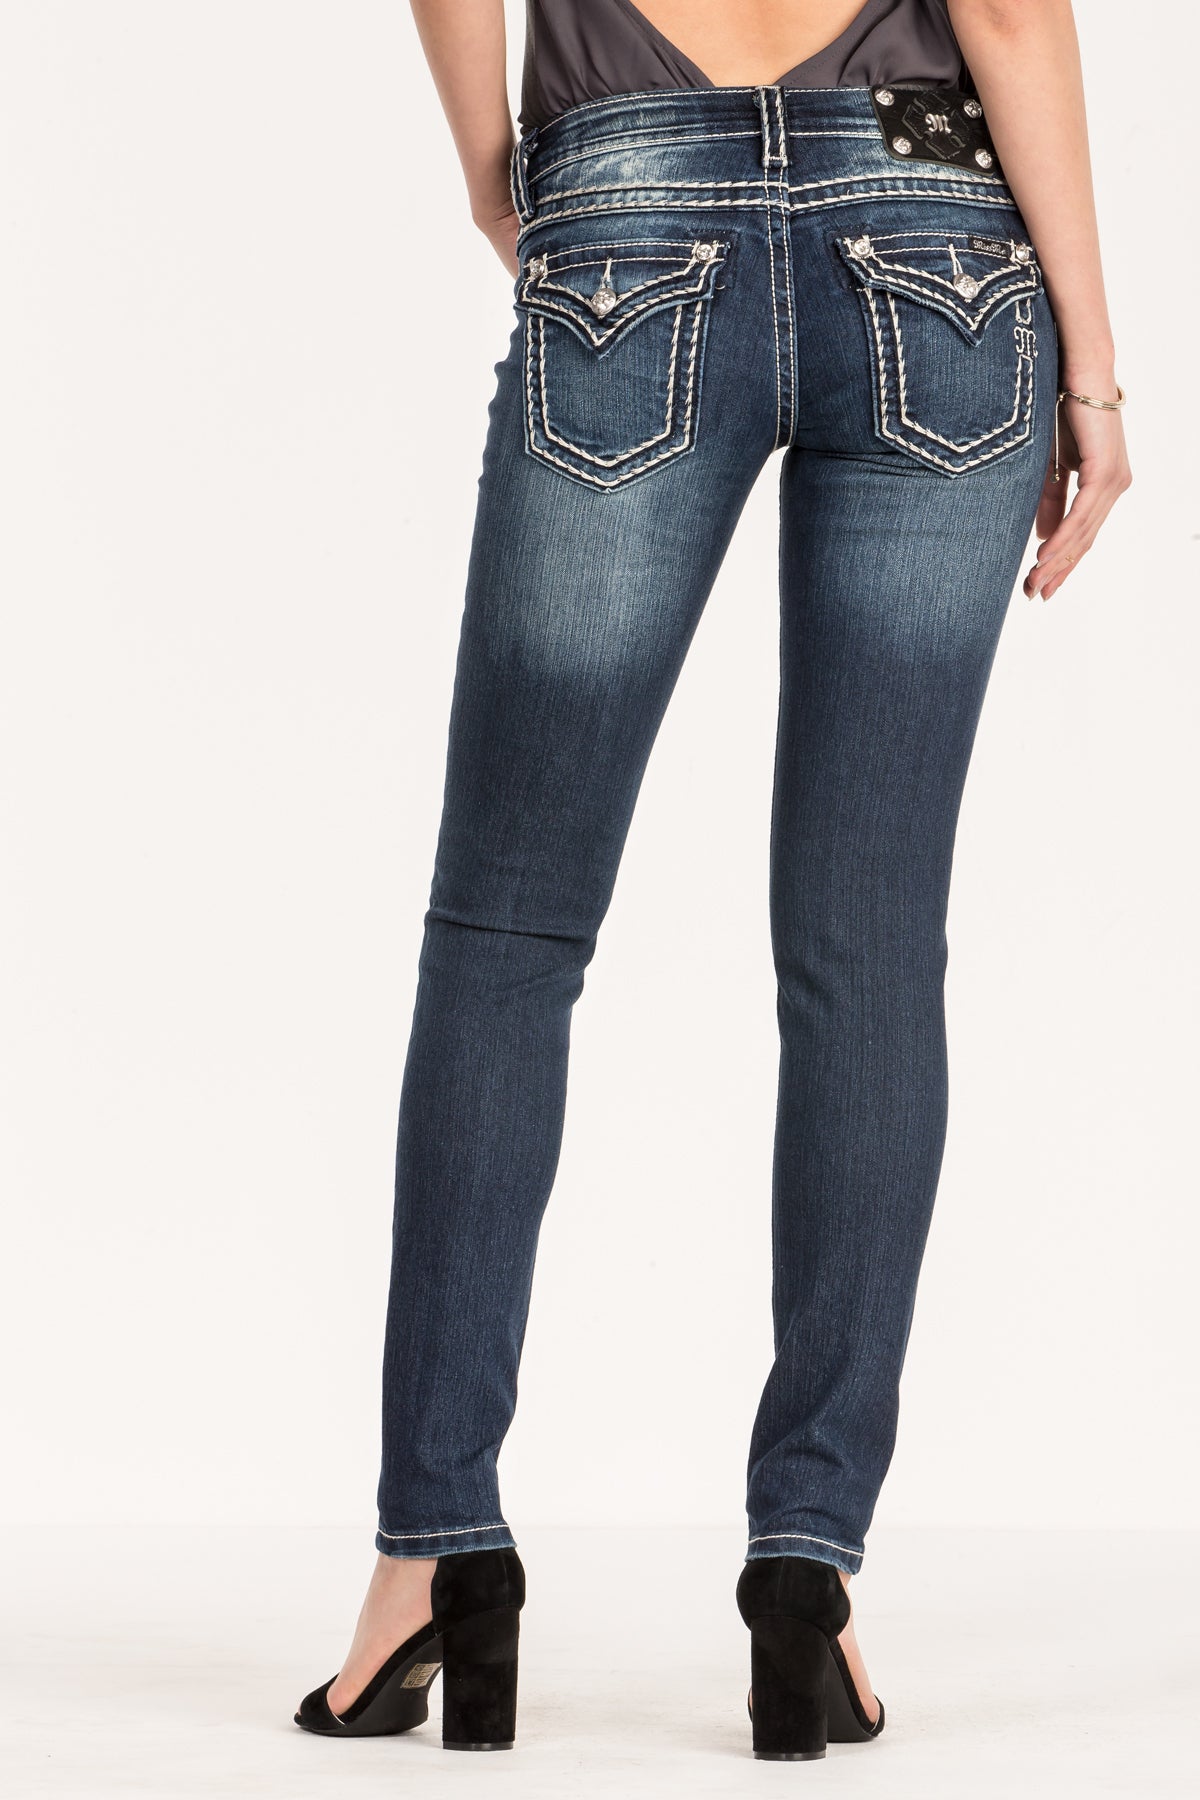 Big Stitch Dark Wash Skinny Jeans | Only $104.00 |